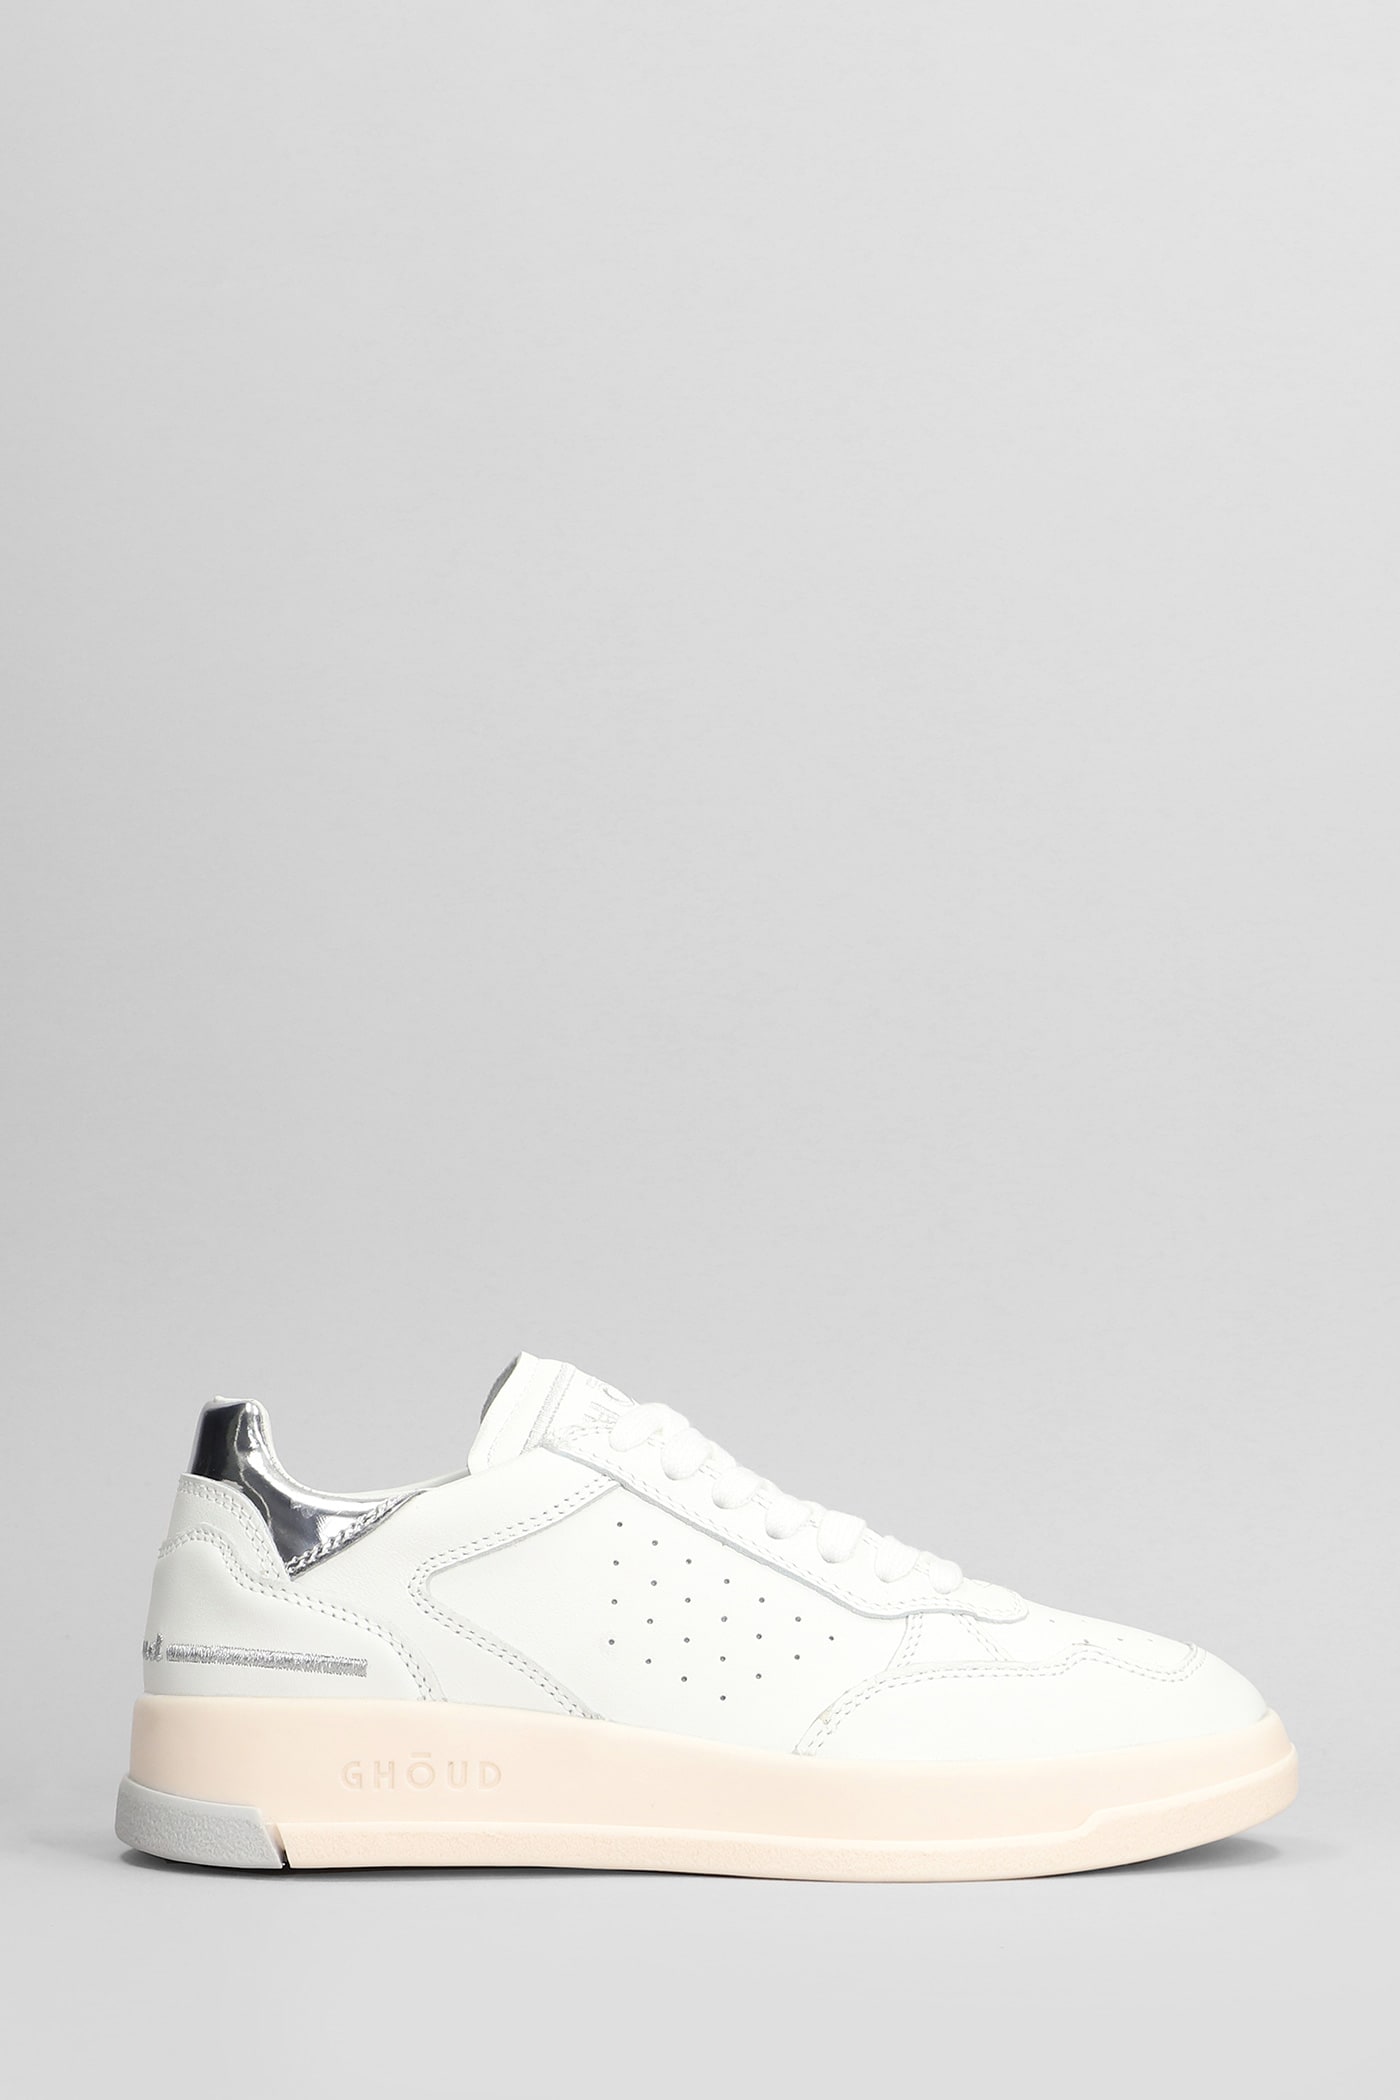 Ghoud Tweener Low Sneakers In White Leather